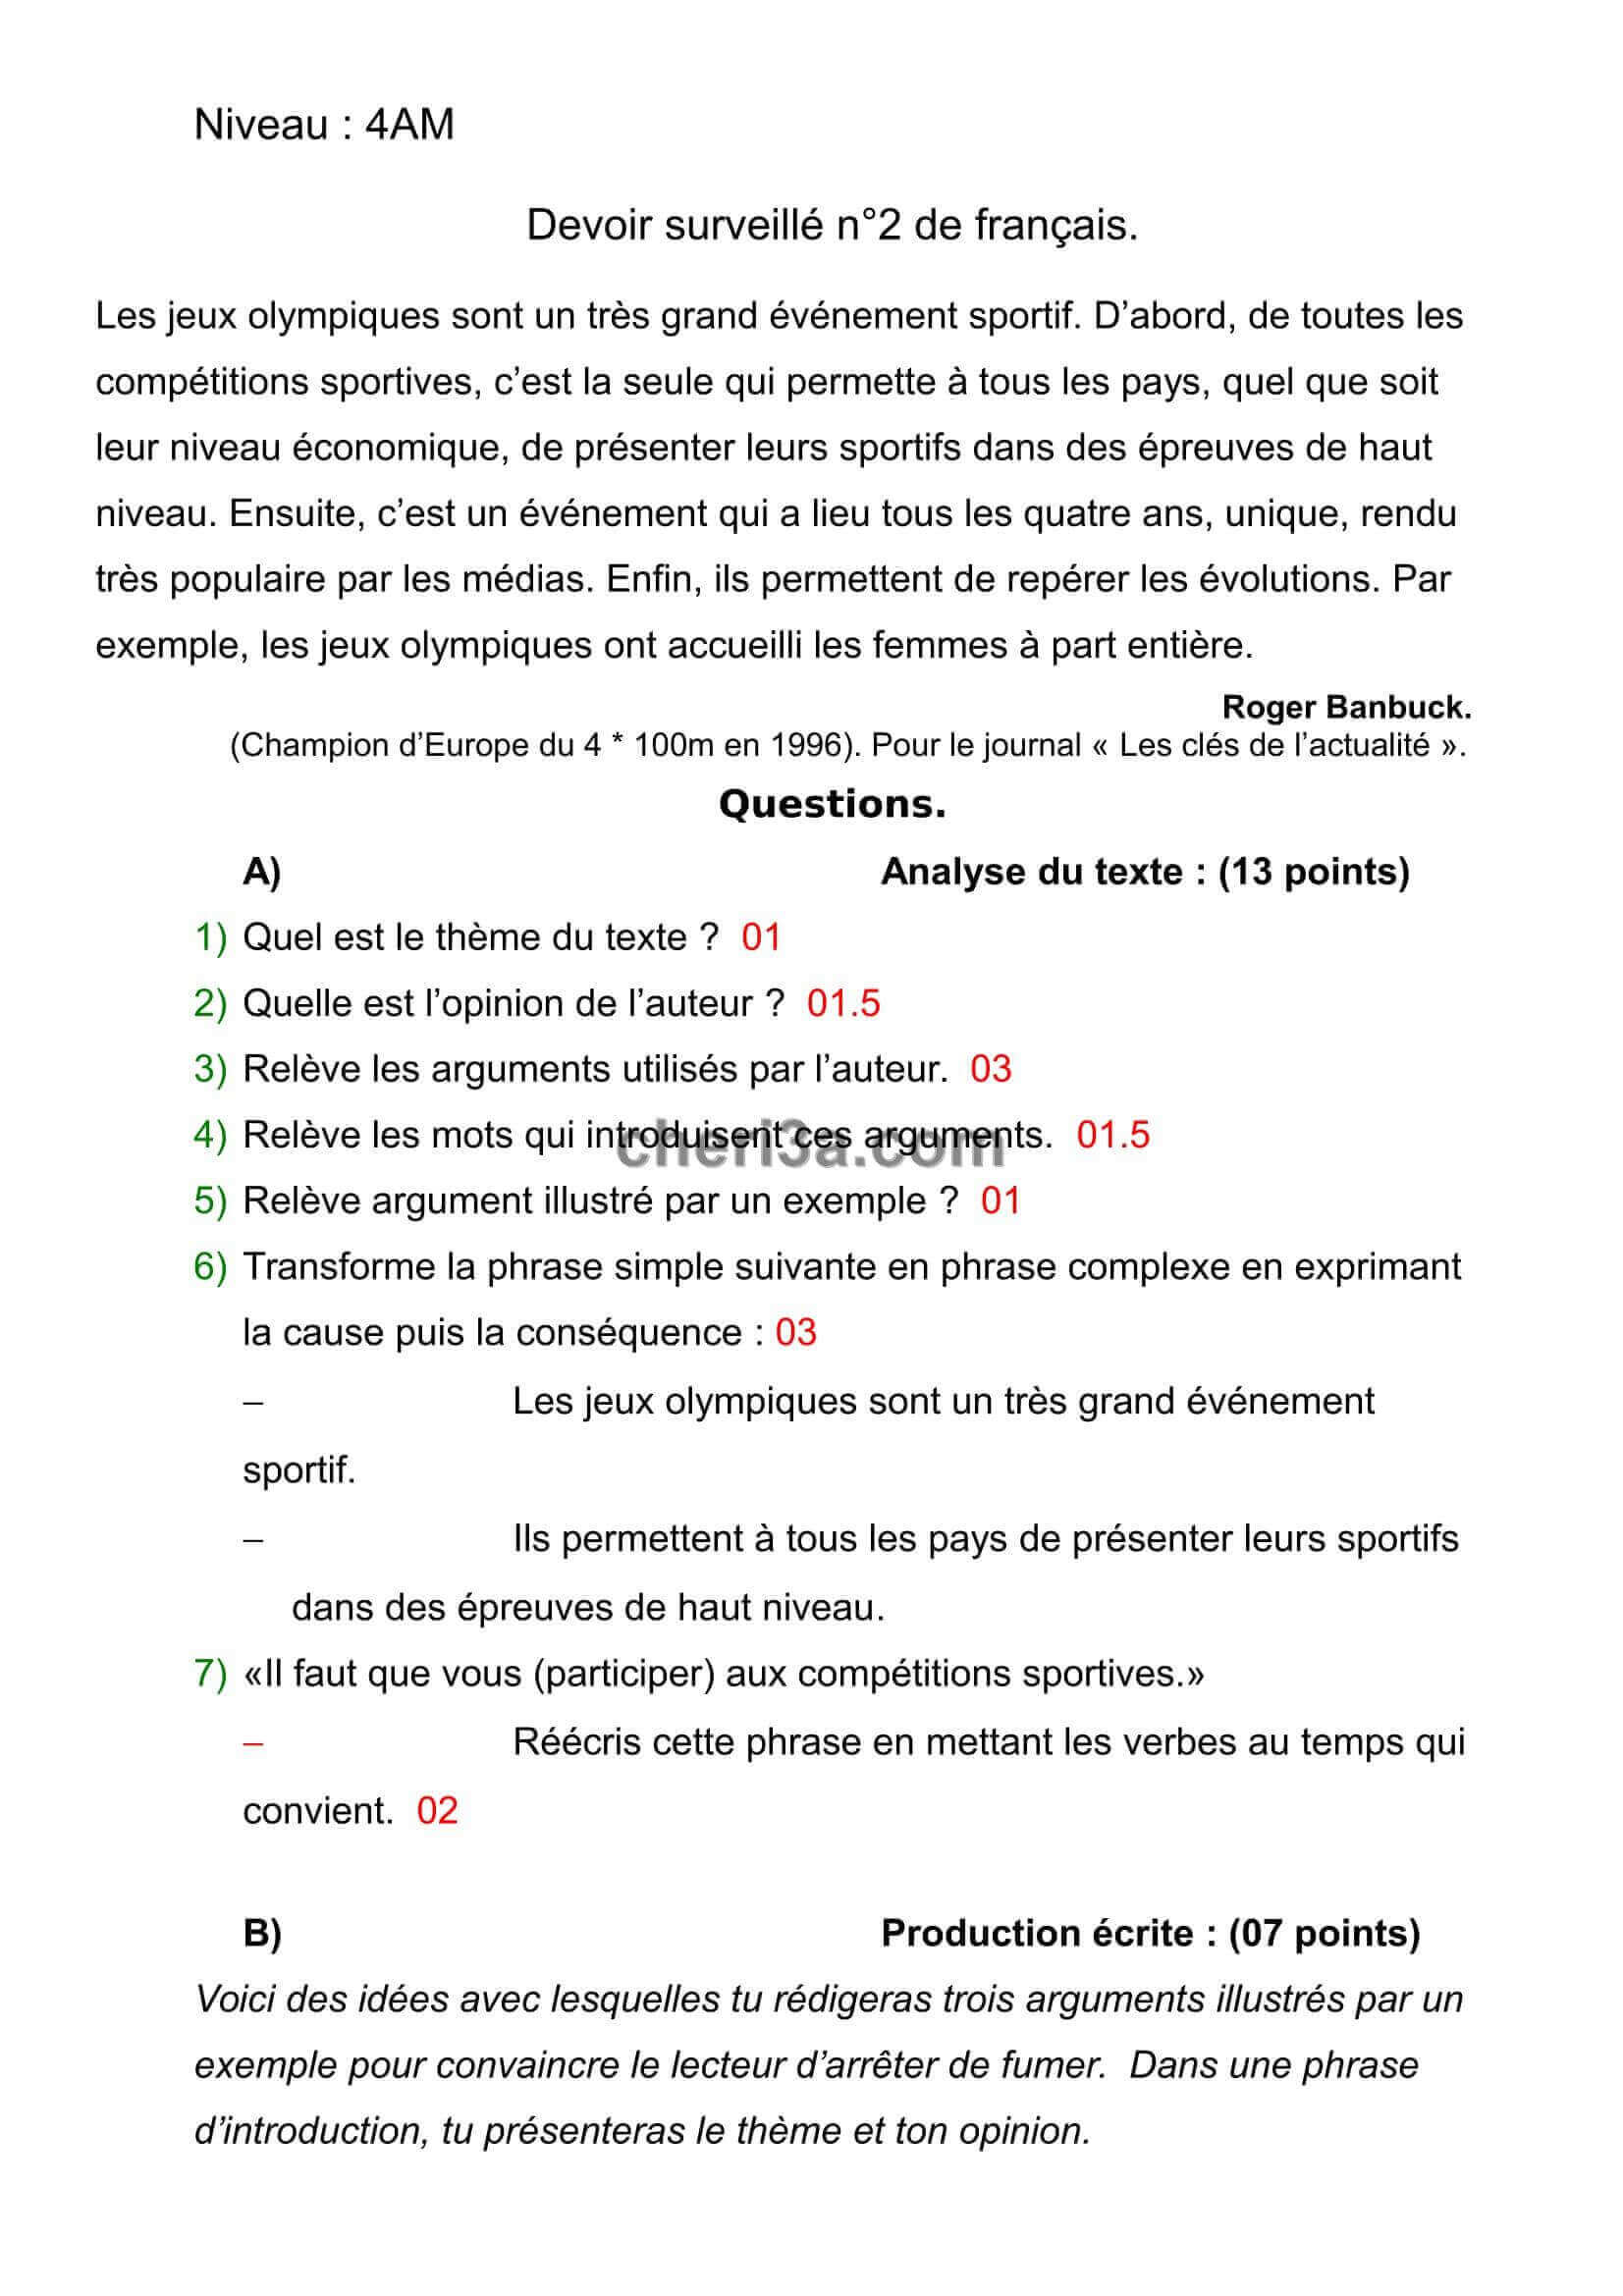 اختبار الفصل الاول للسنة الرابعة متوسط اللغة الفرنسية النموذج 3